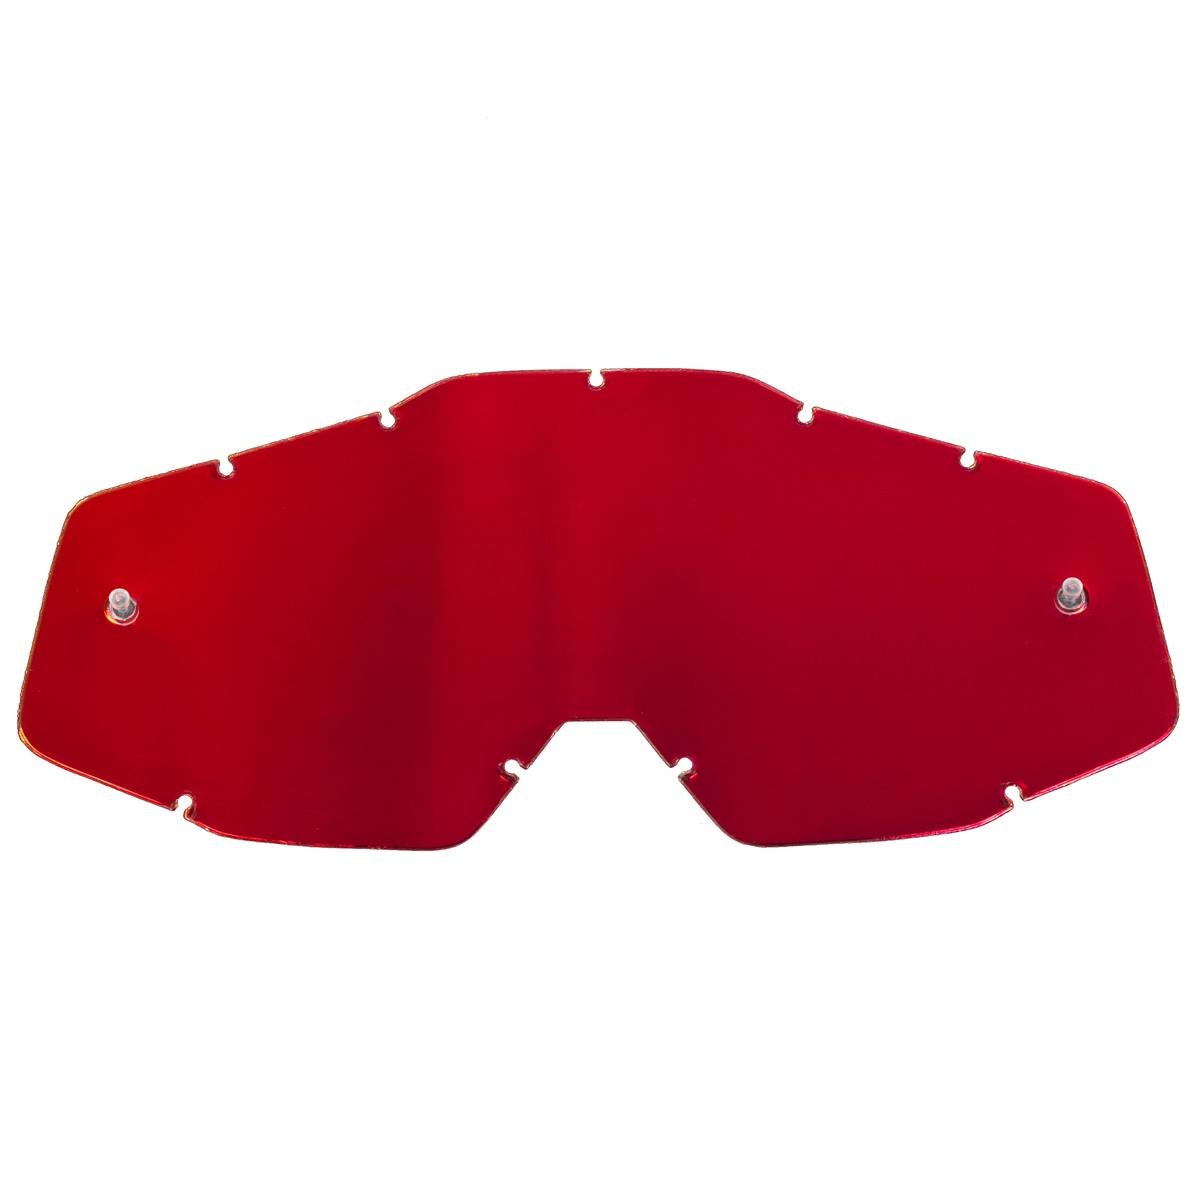 100% Replacement Lens Racecraft / Accuri / Strata Mirror Red - Antifog